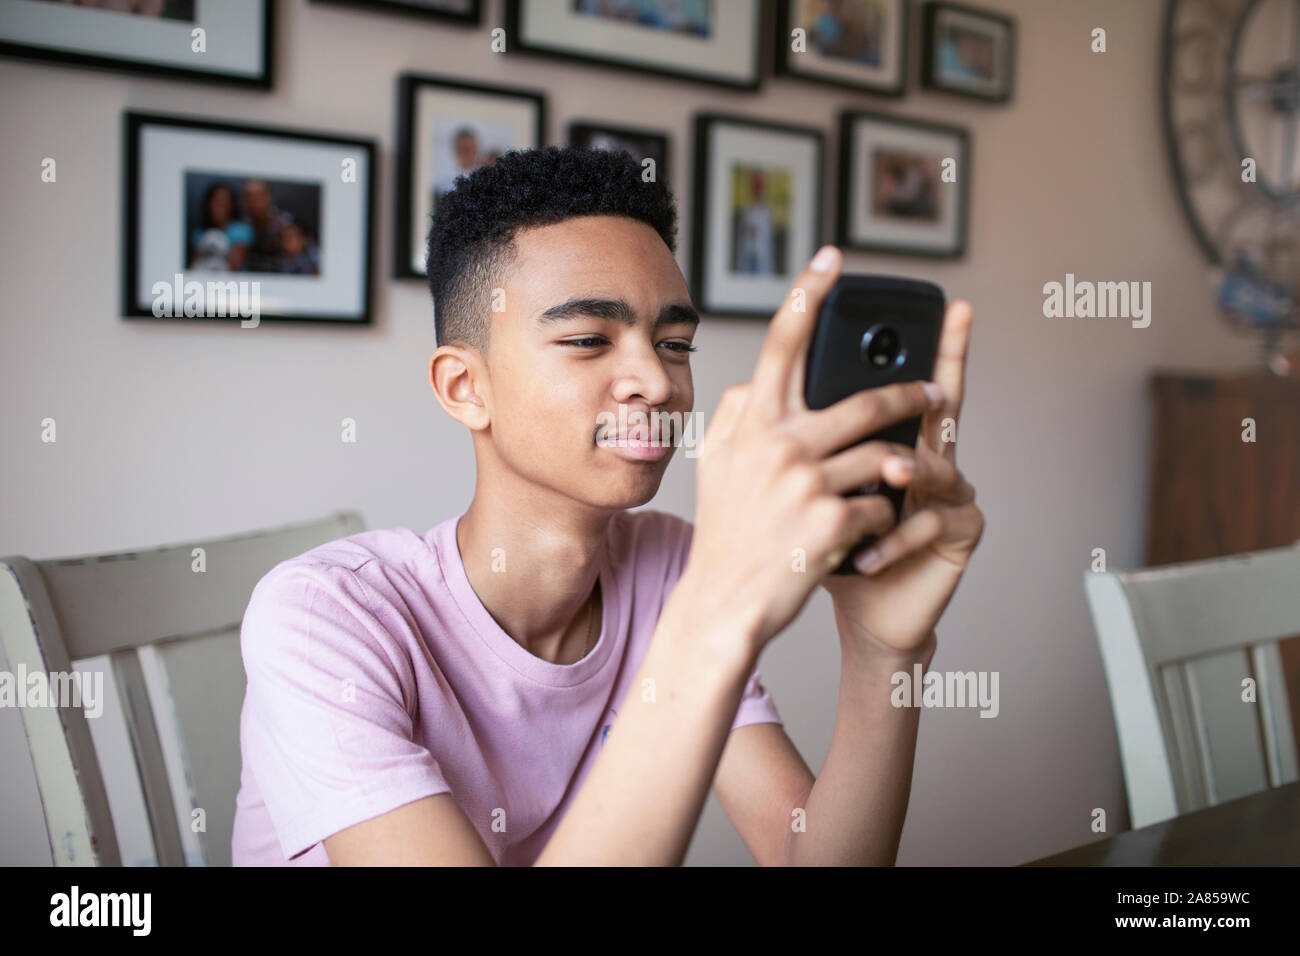 Adolescente con teléfonos inteligentes. Foto de stock